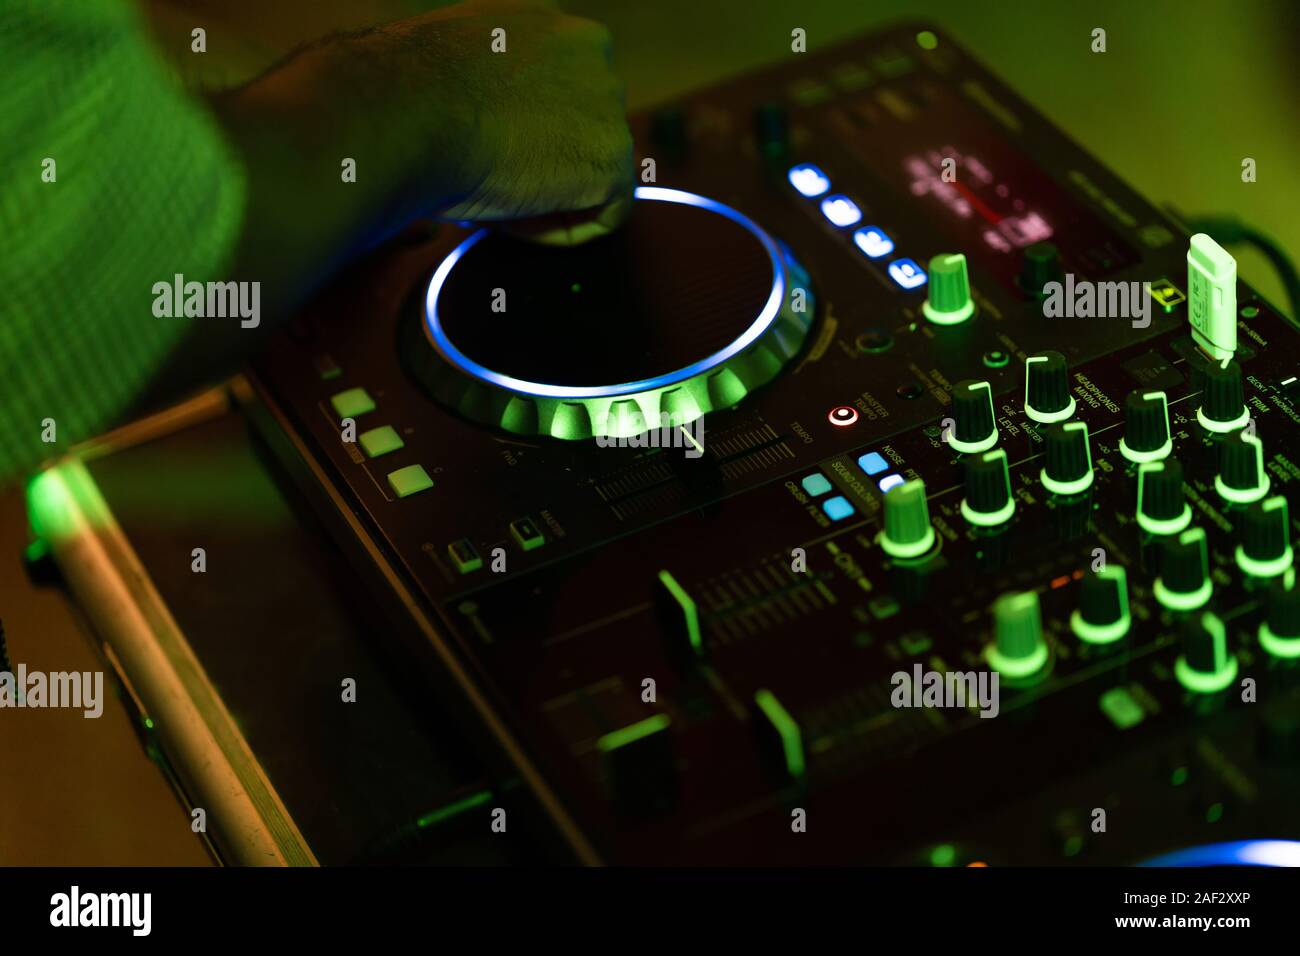 Club DJ joue de la musique sur scène en boite.Main de disc jockey son réglage de volume.L'équipement audio professionnel sur music festival Banque D'Images